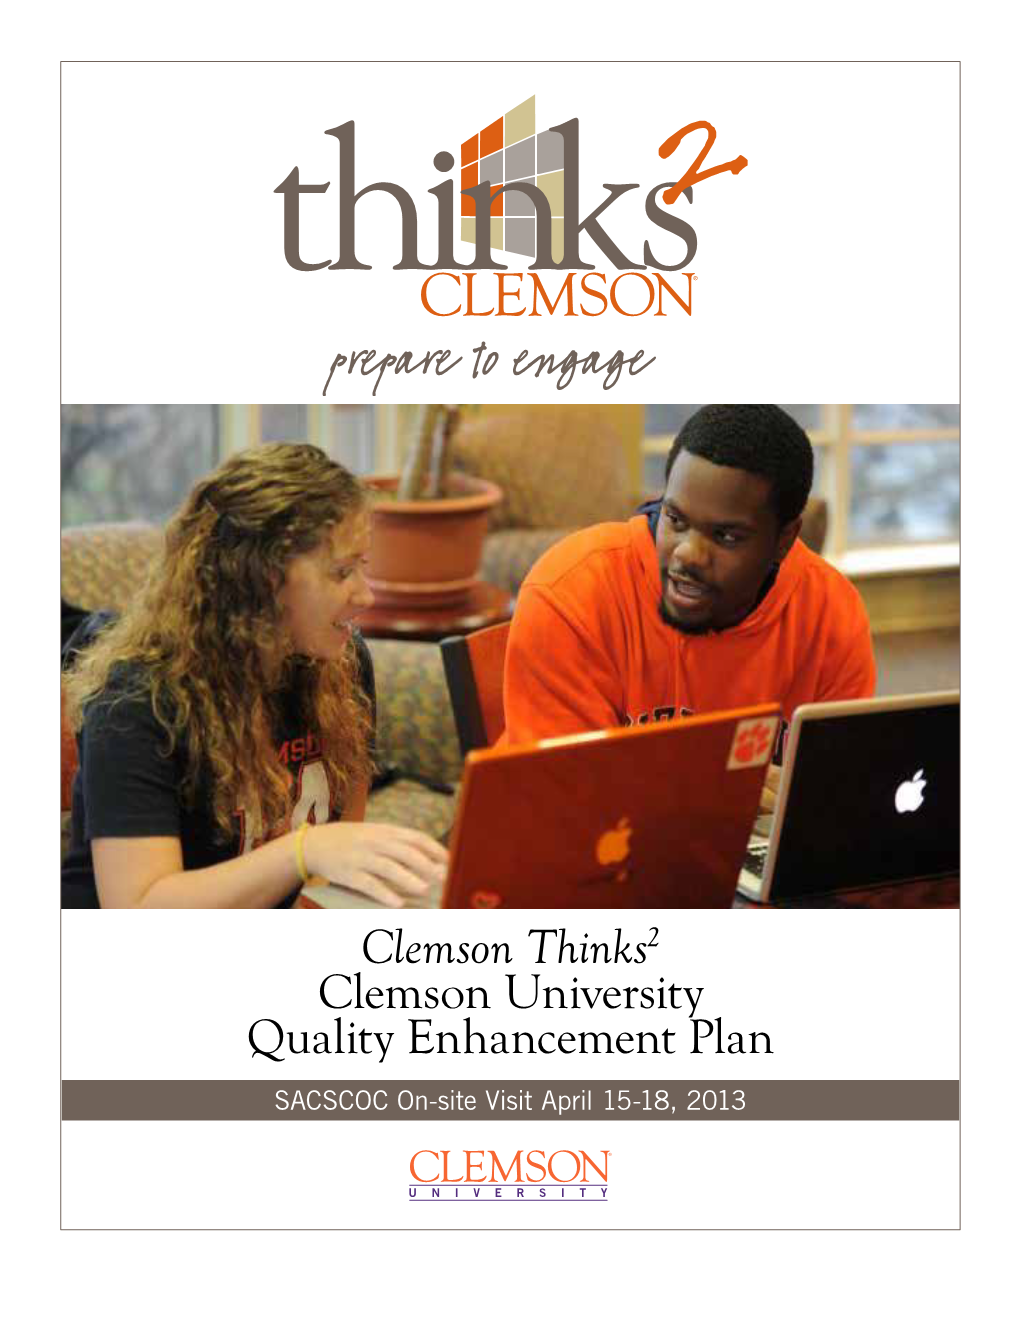 Clemson Thinks2 Clemson University Quality Enhancement Plan SACSCOC On-Site Visit April 15-18, 2013 CLEMSON UNIVERSITY